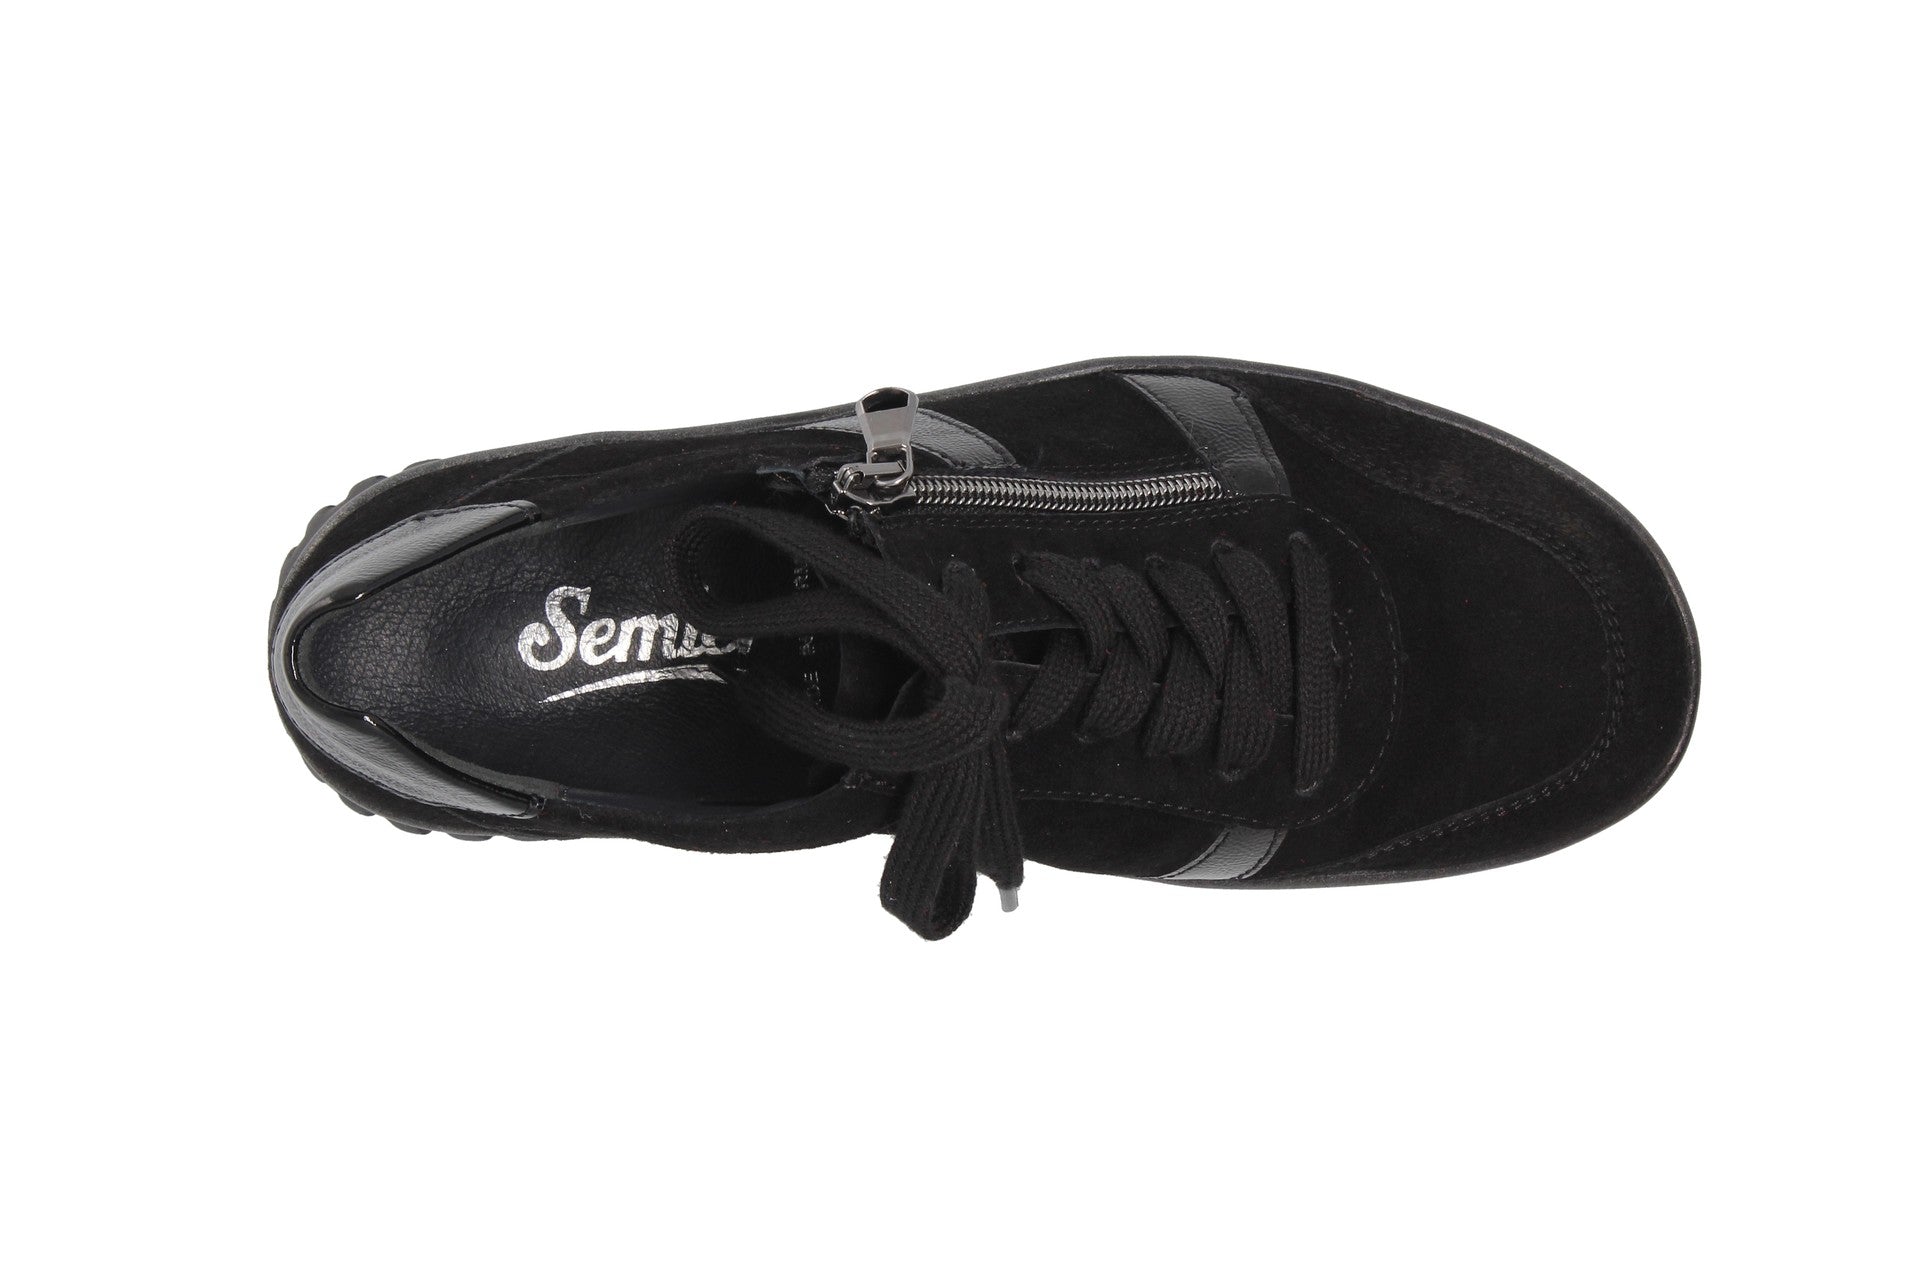 Lena – black – lace-up shoe